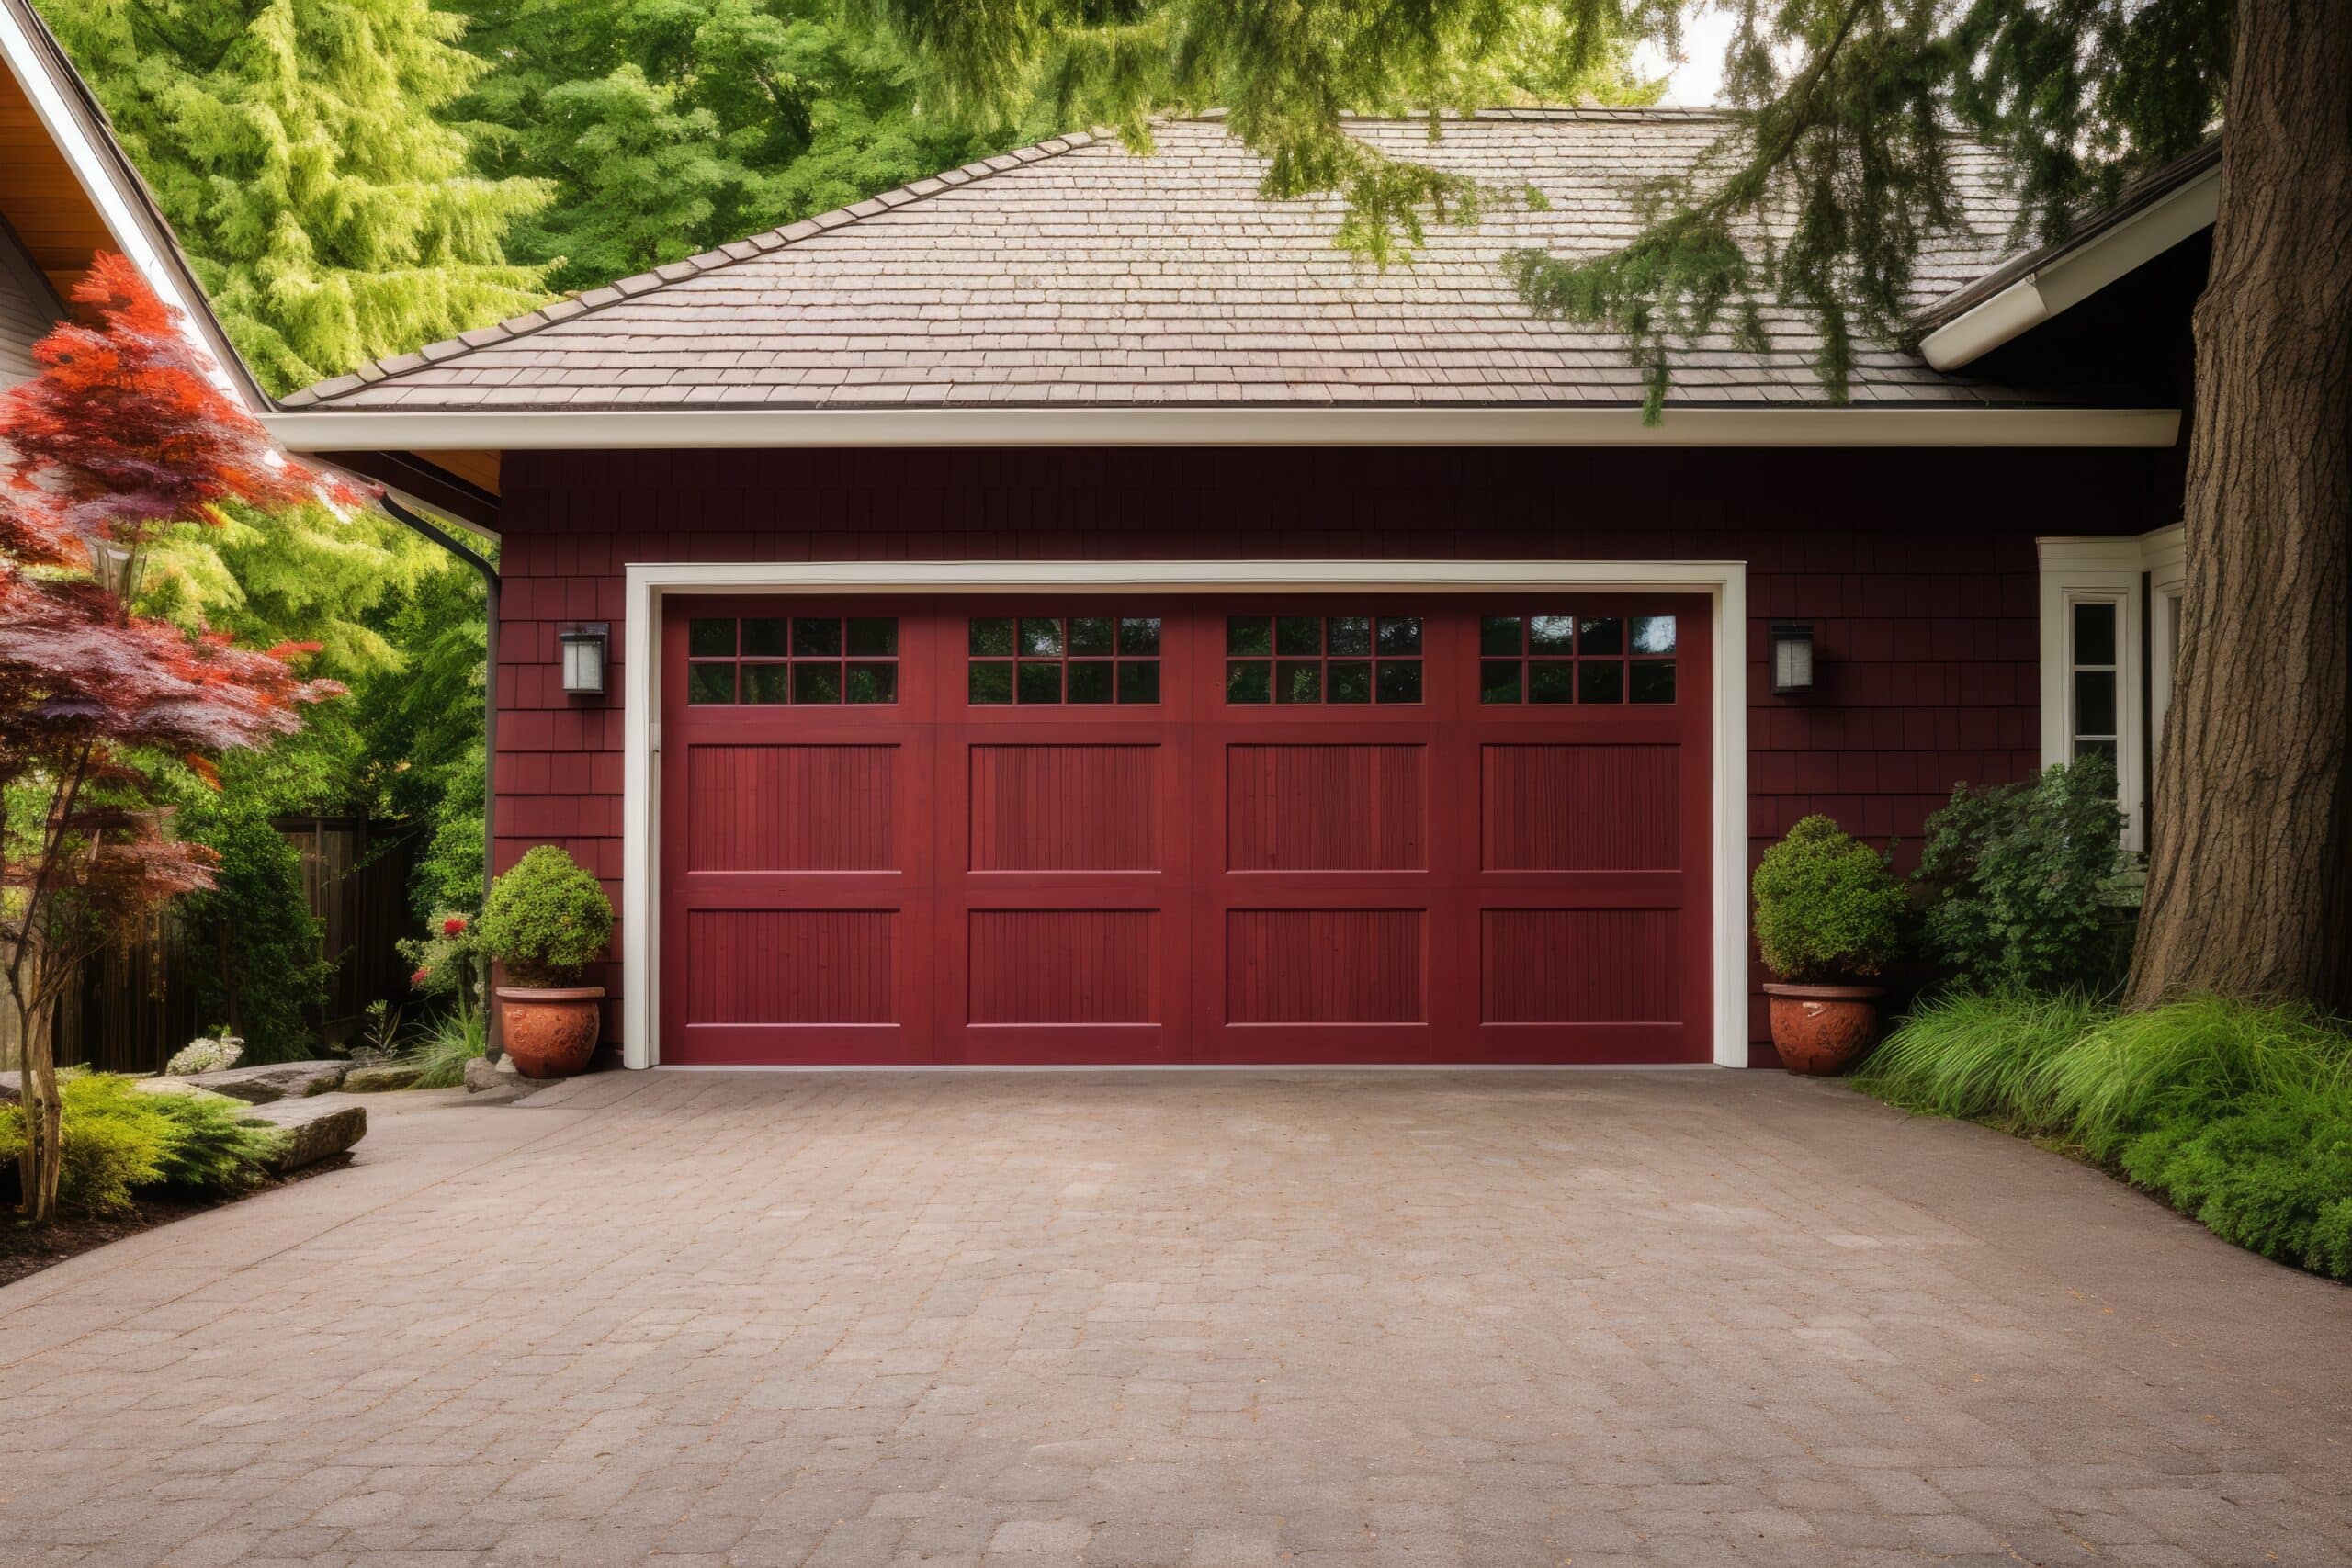 www.appr.com : Are Smart Garage Door Openers Safe?